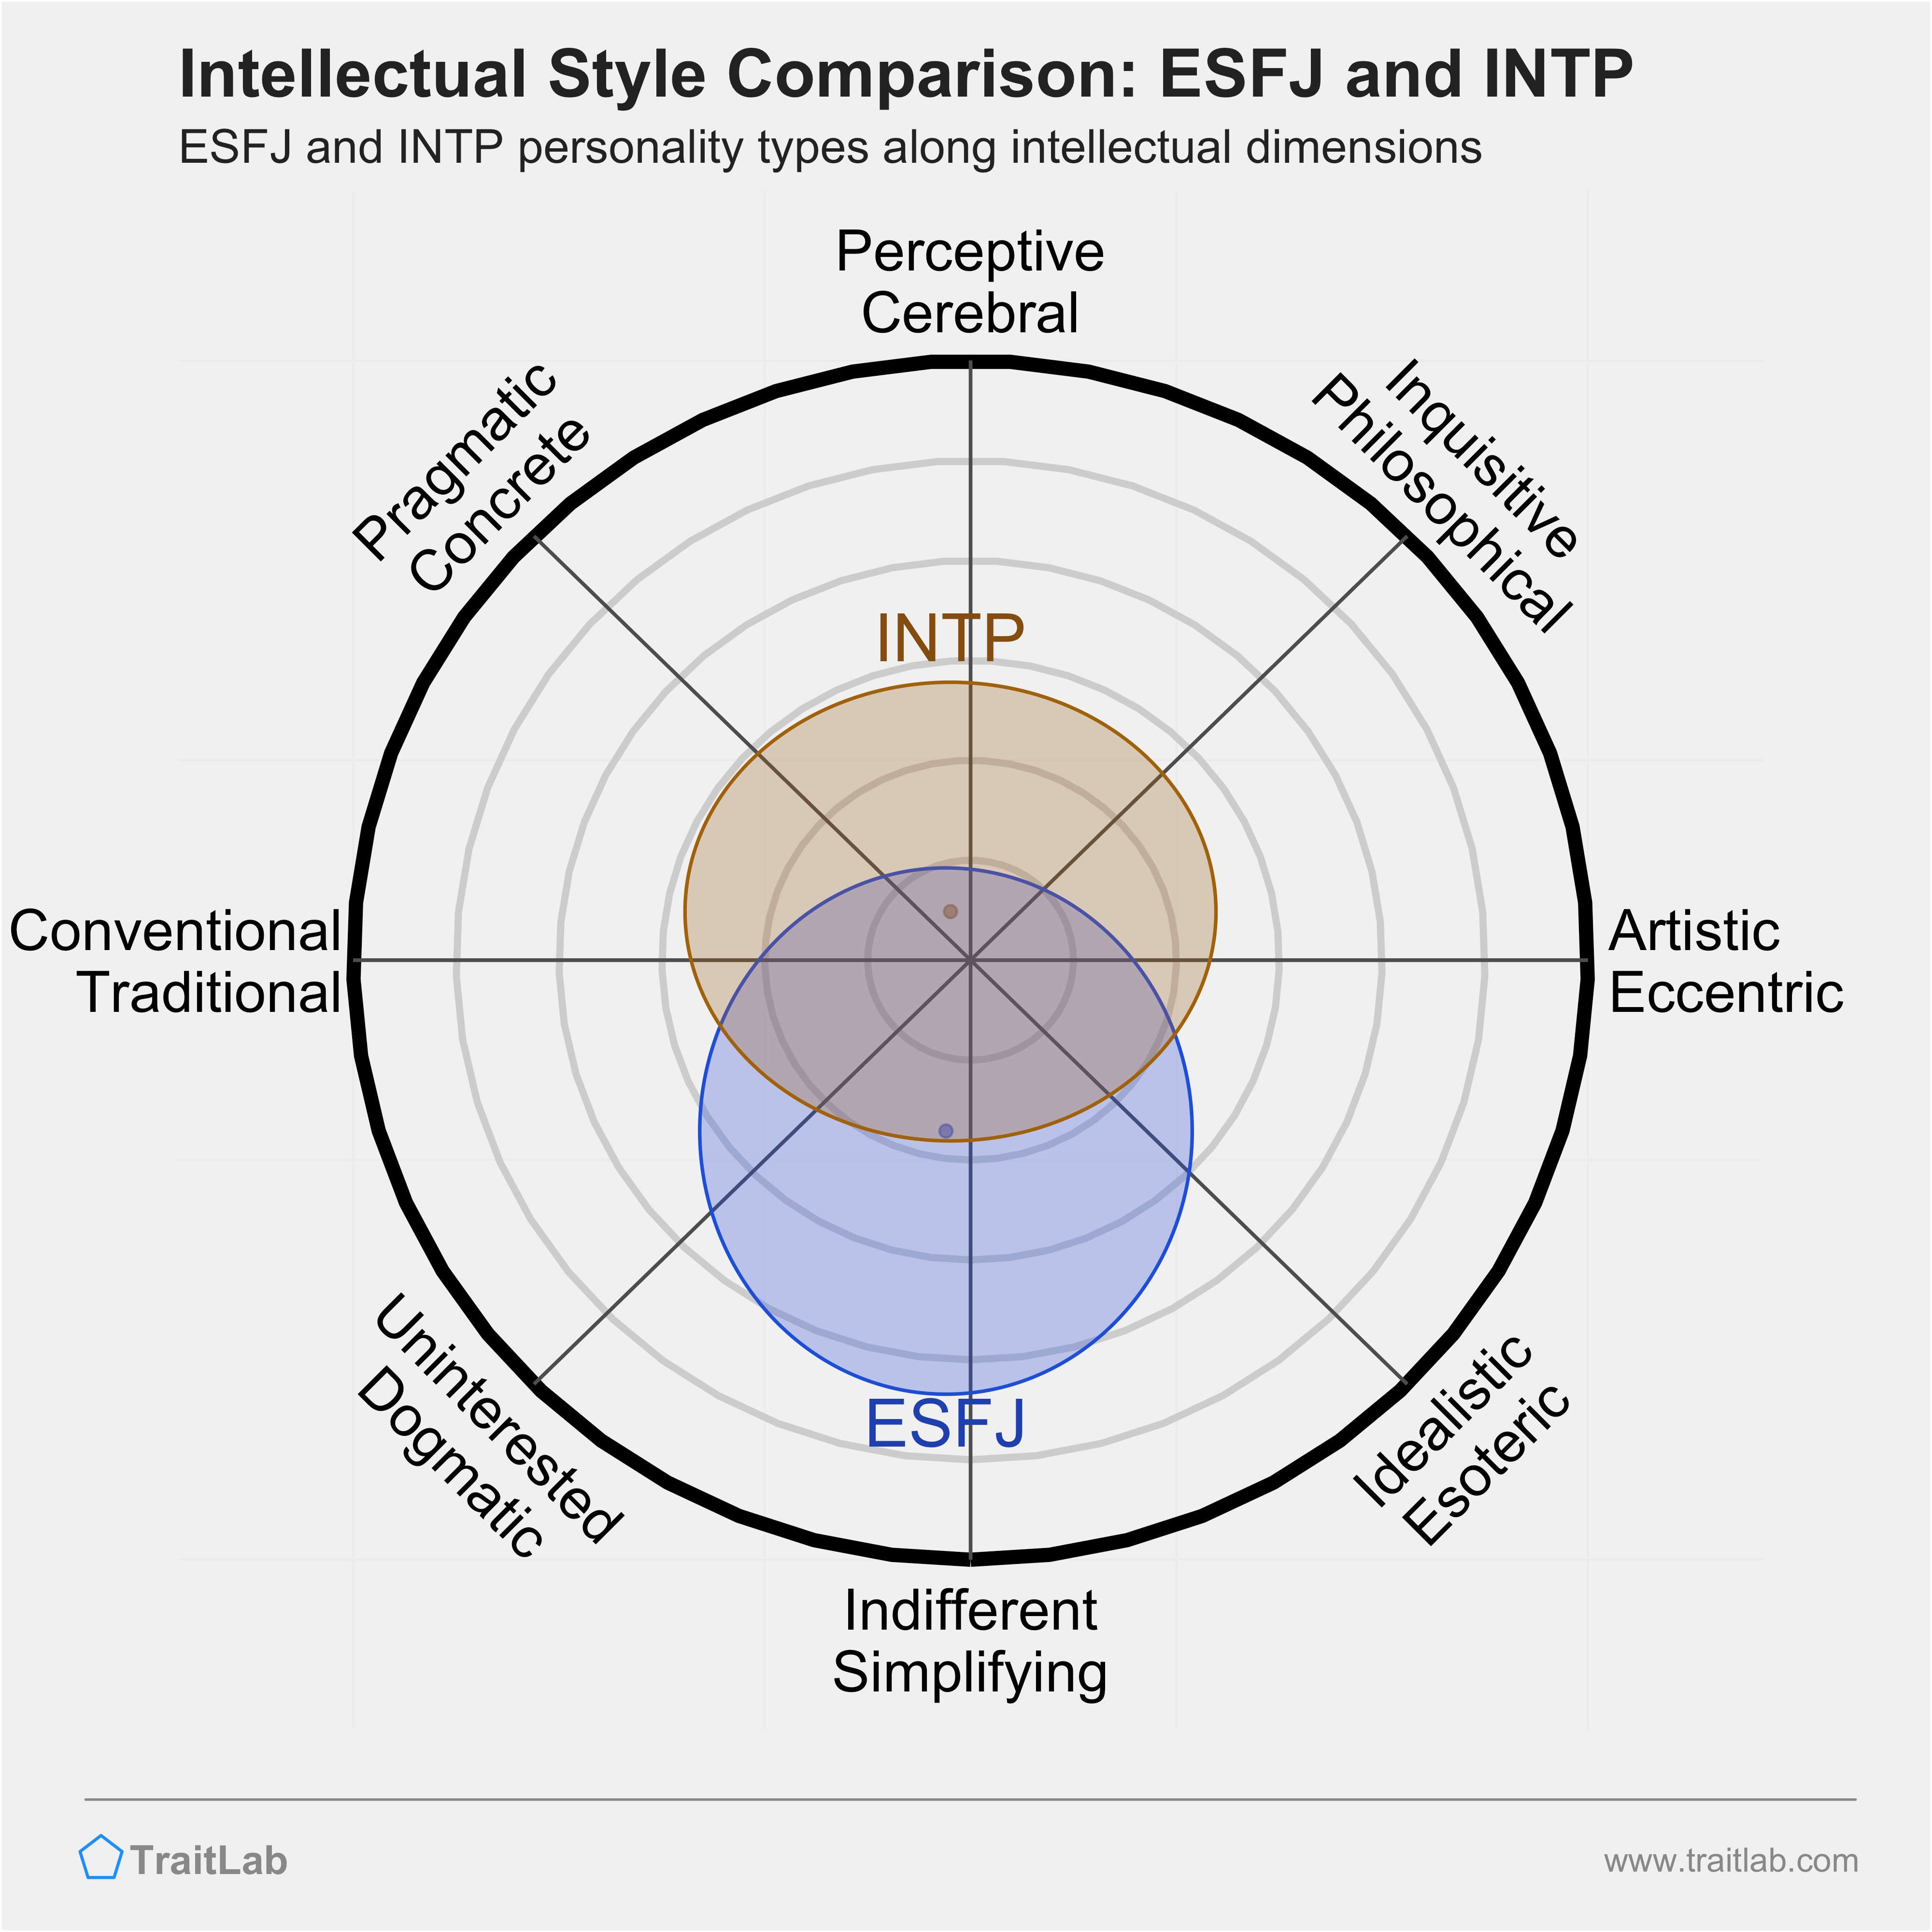 ESFJ and INTP comparison across intellectual dimensions